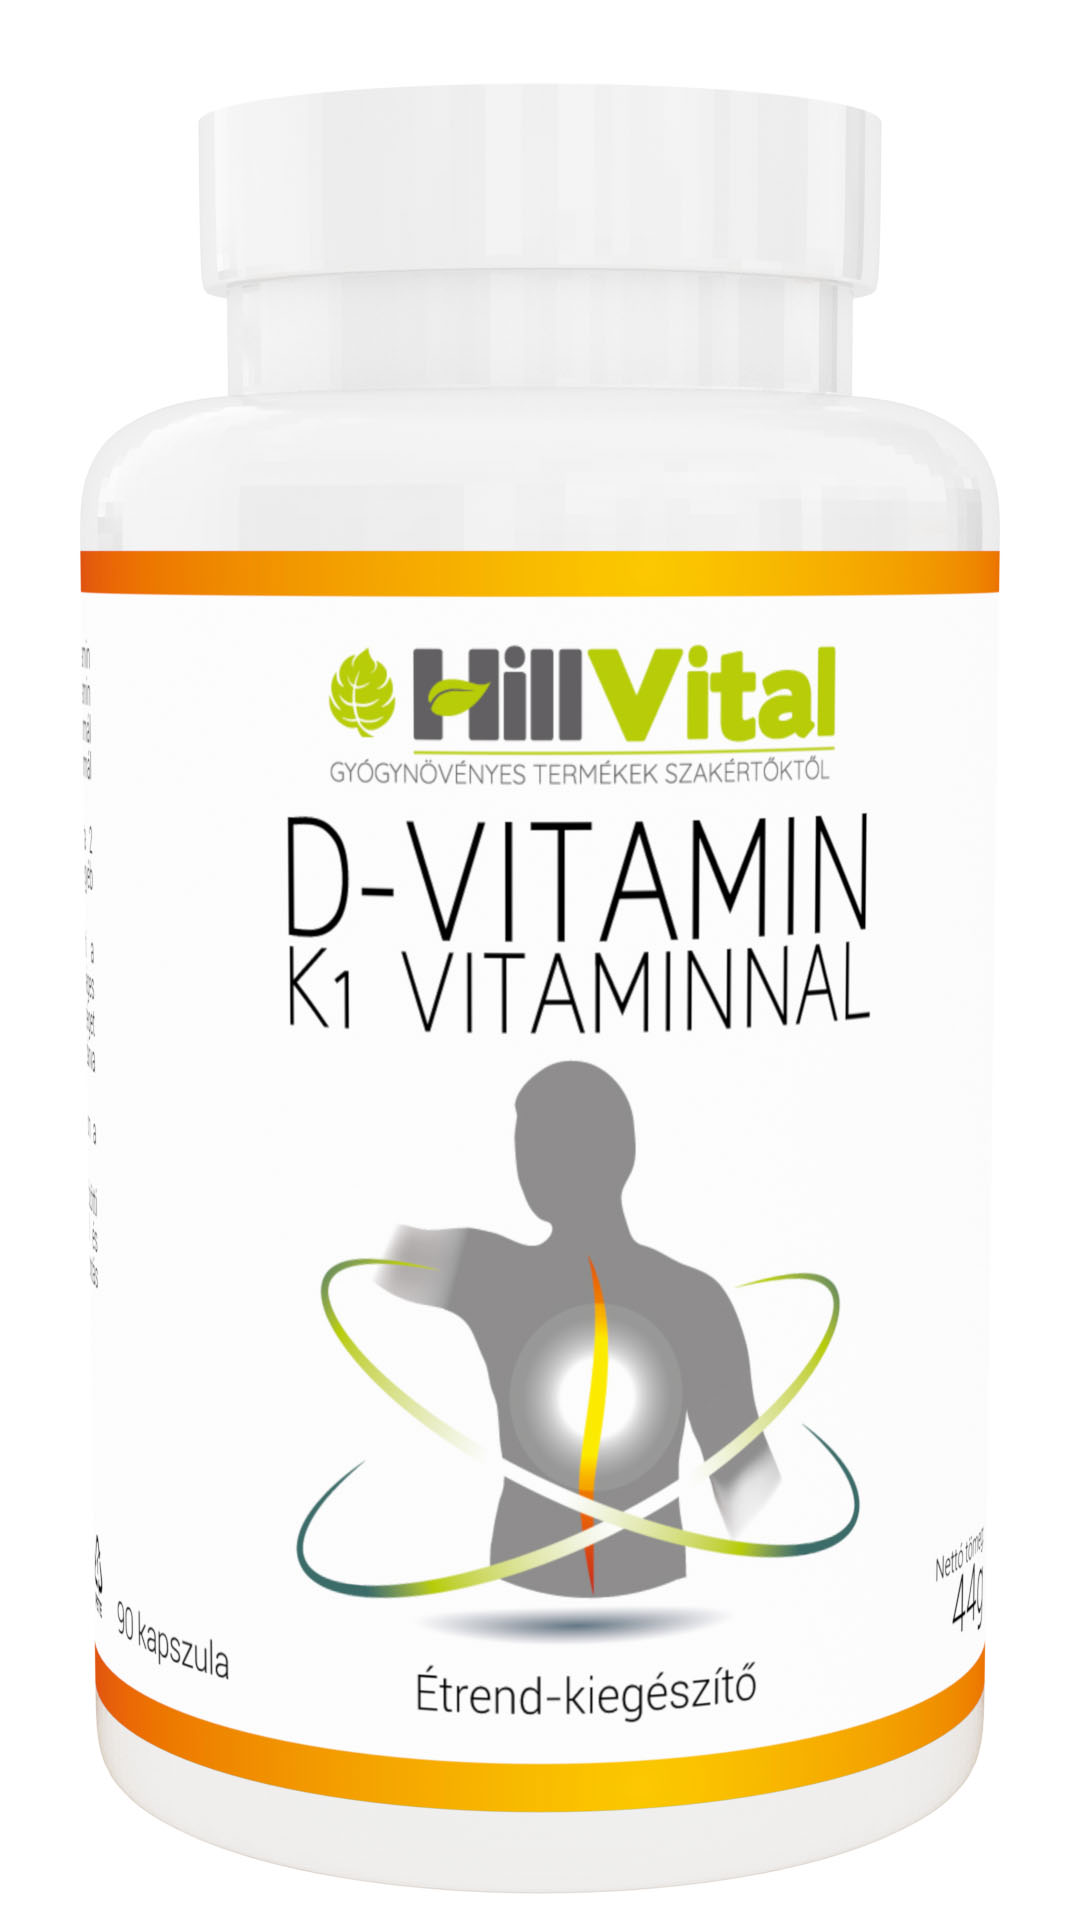 D-vitamin K1-vitaminnal